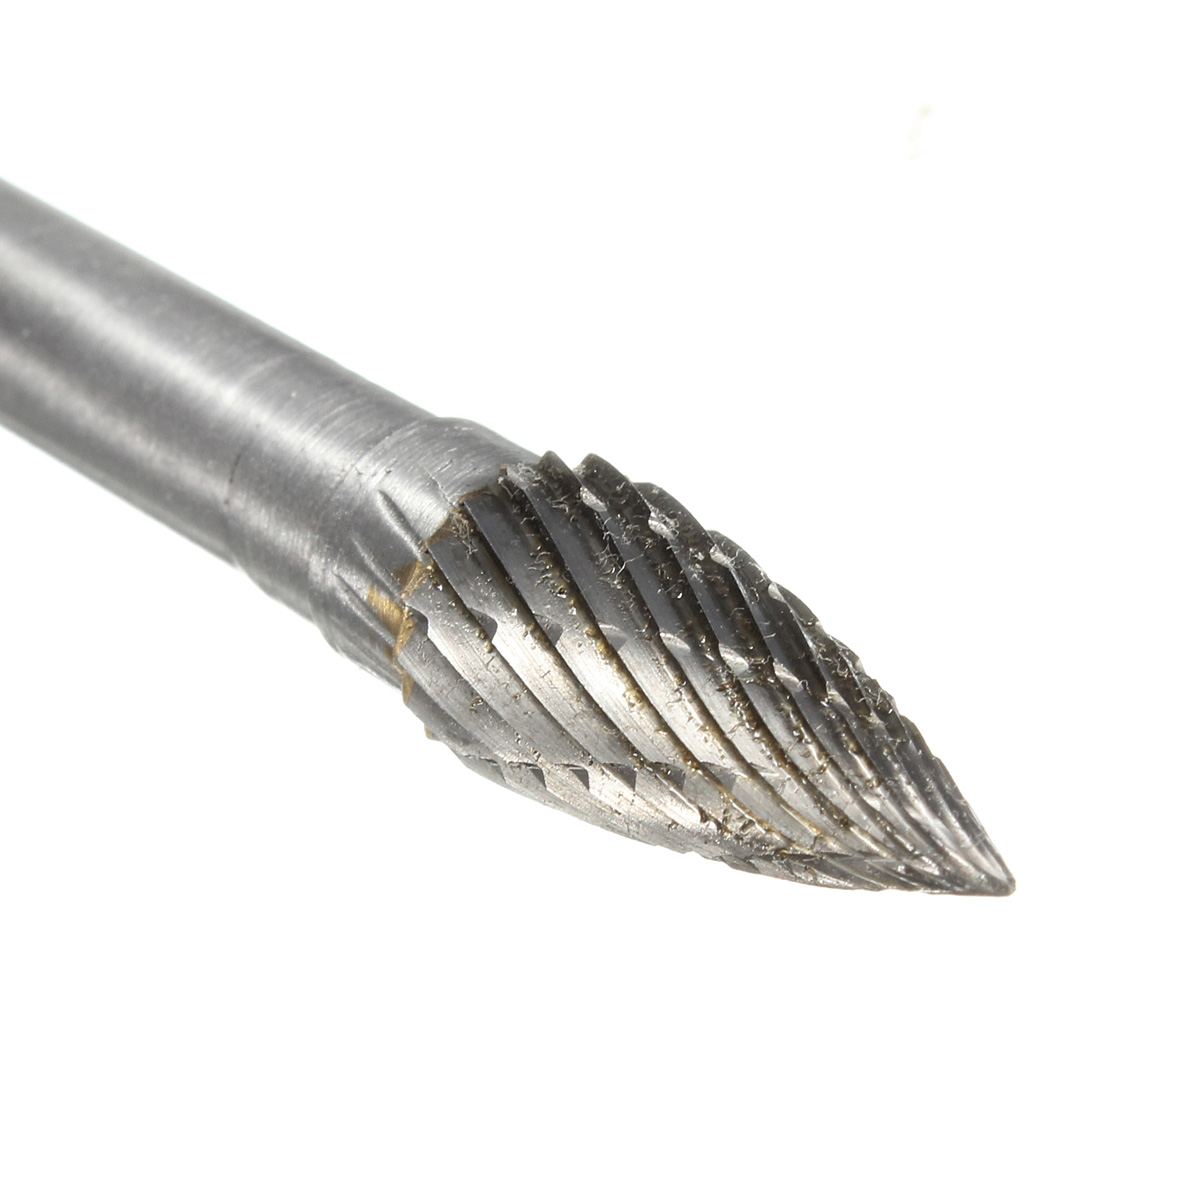 8MM-head-THK-Tungsten-Carbide-Rotary-Point-Burr-Die-Grinder-6mm-Shank-931764-10